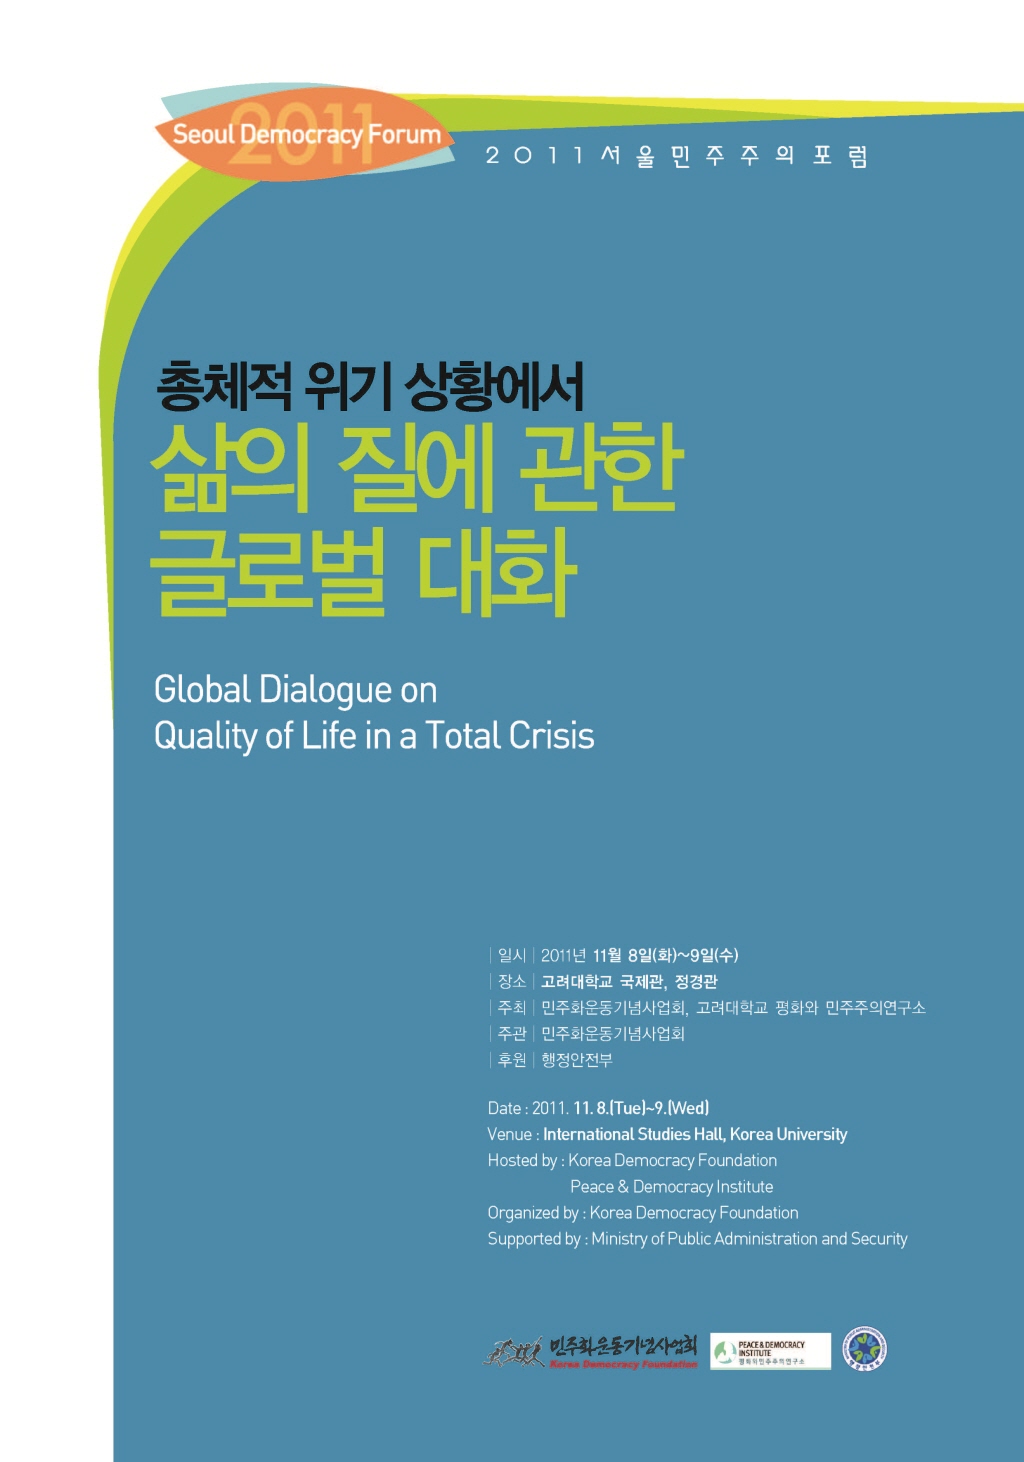 2011 서울민주주의포럼 자료집 (2011 Seoul Democracy Form)